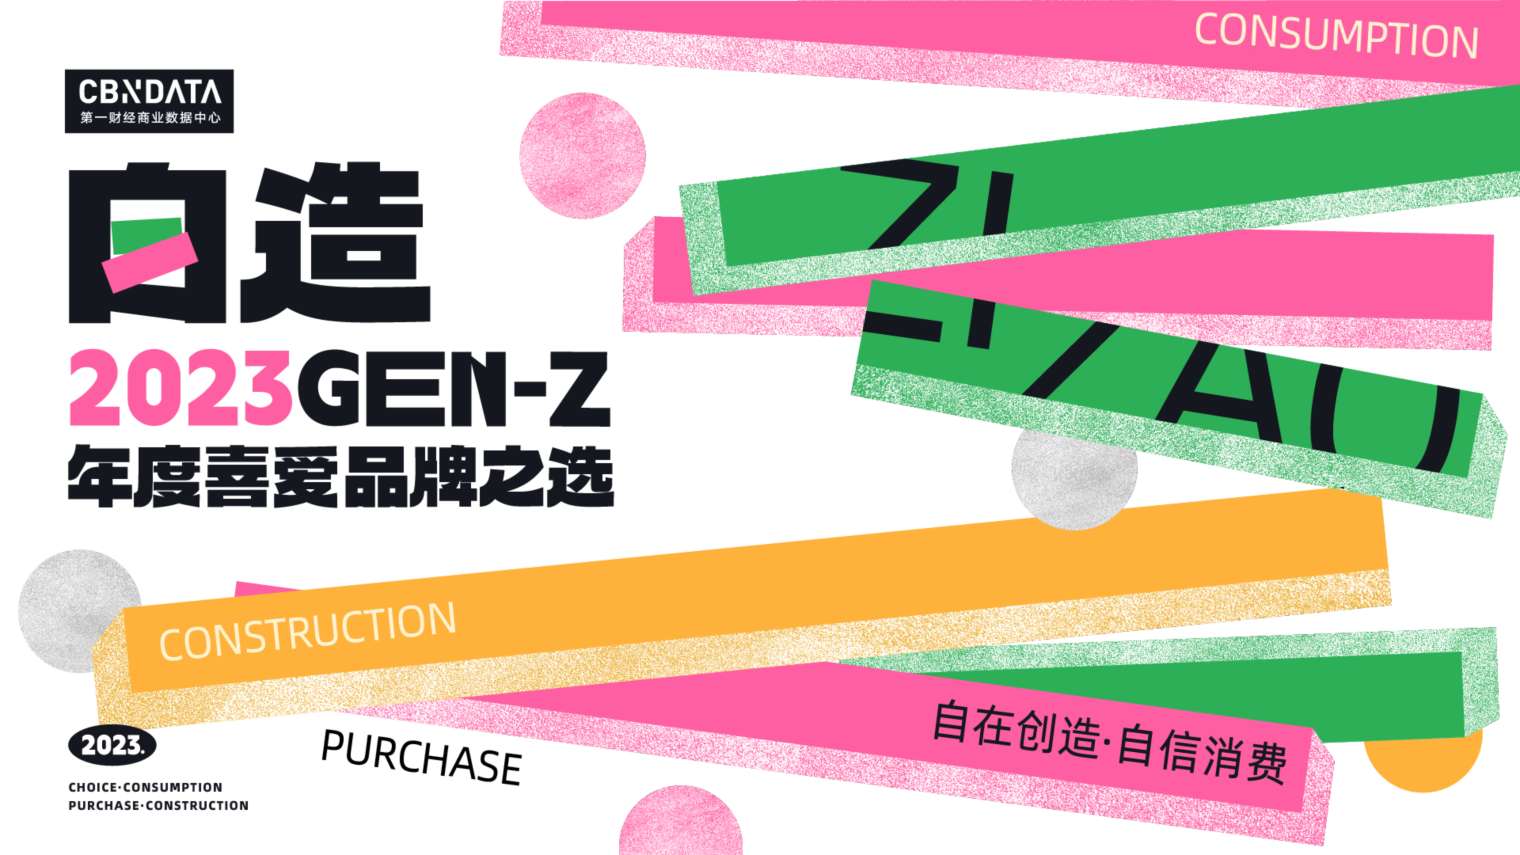 2023 GEN-Z年度喜爱品牌之选报名开启，看新世代自信发声！